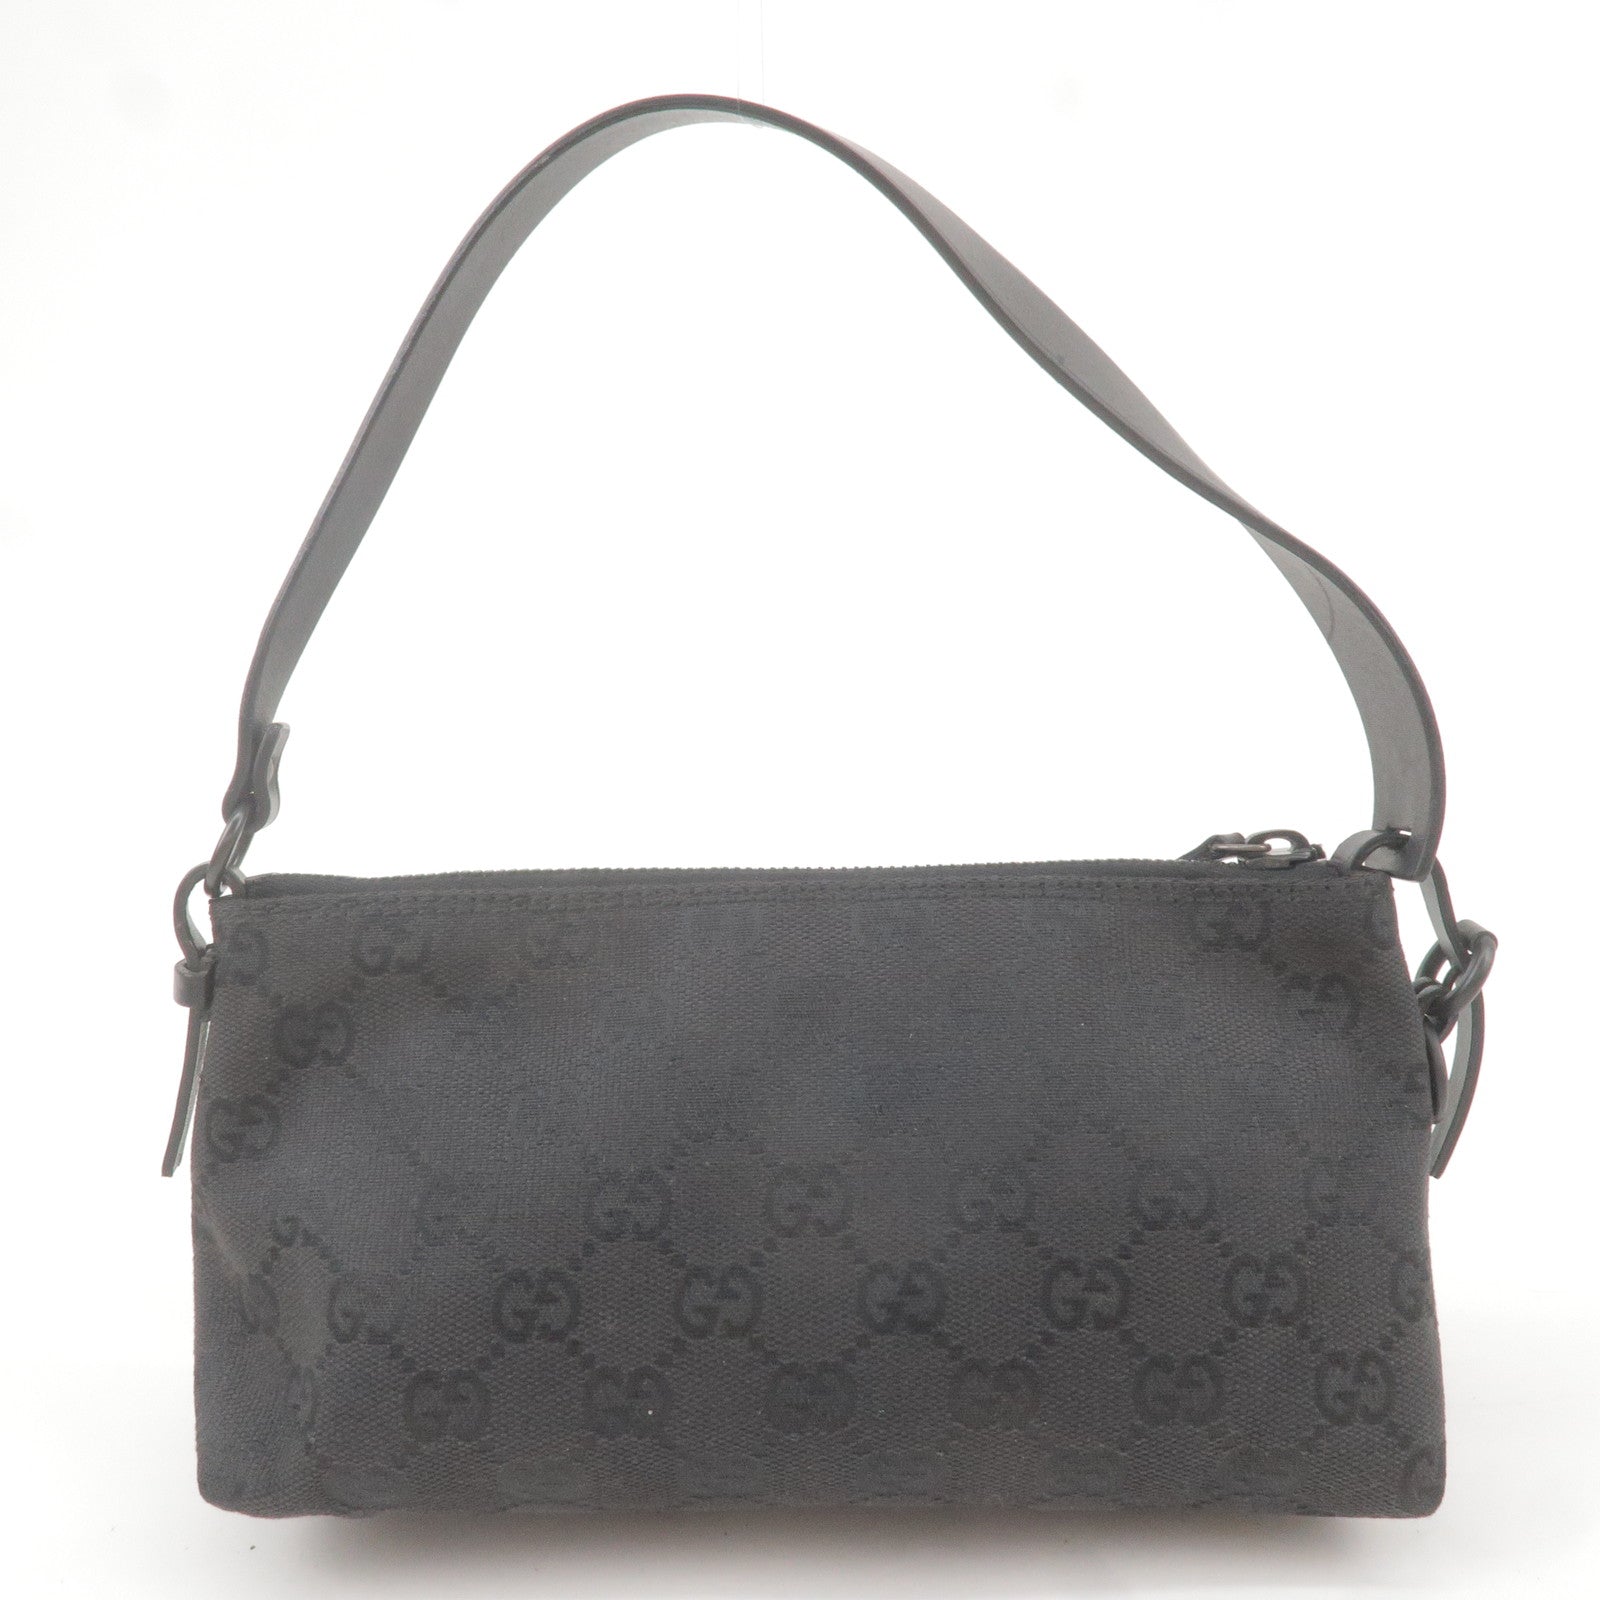 black gucci monogram purse